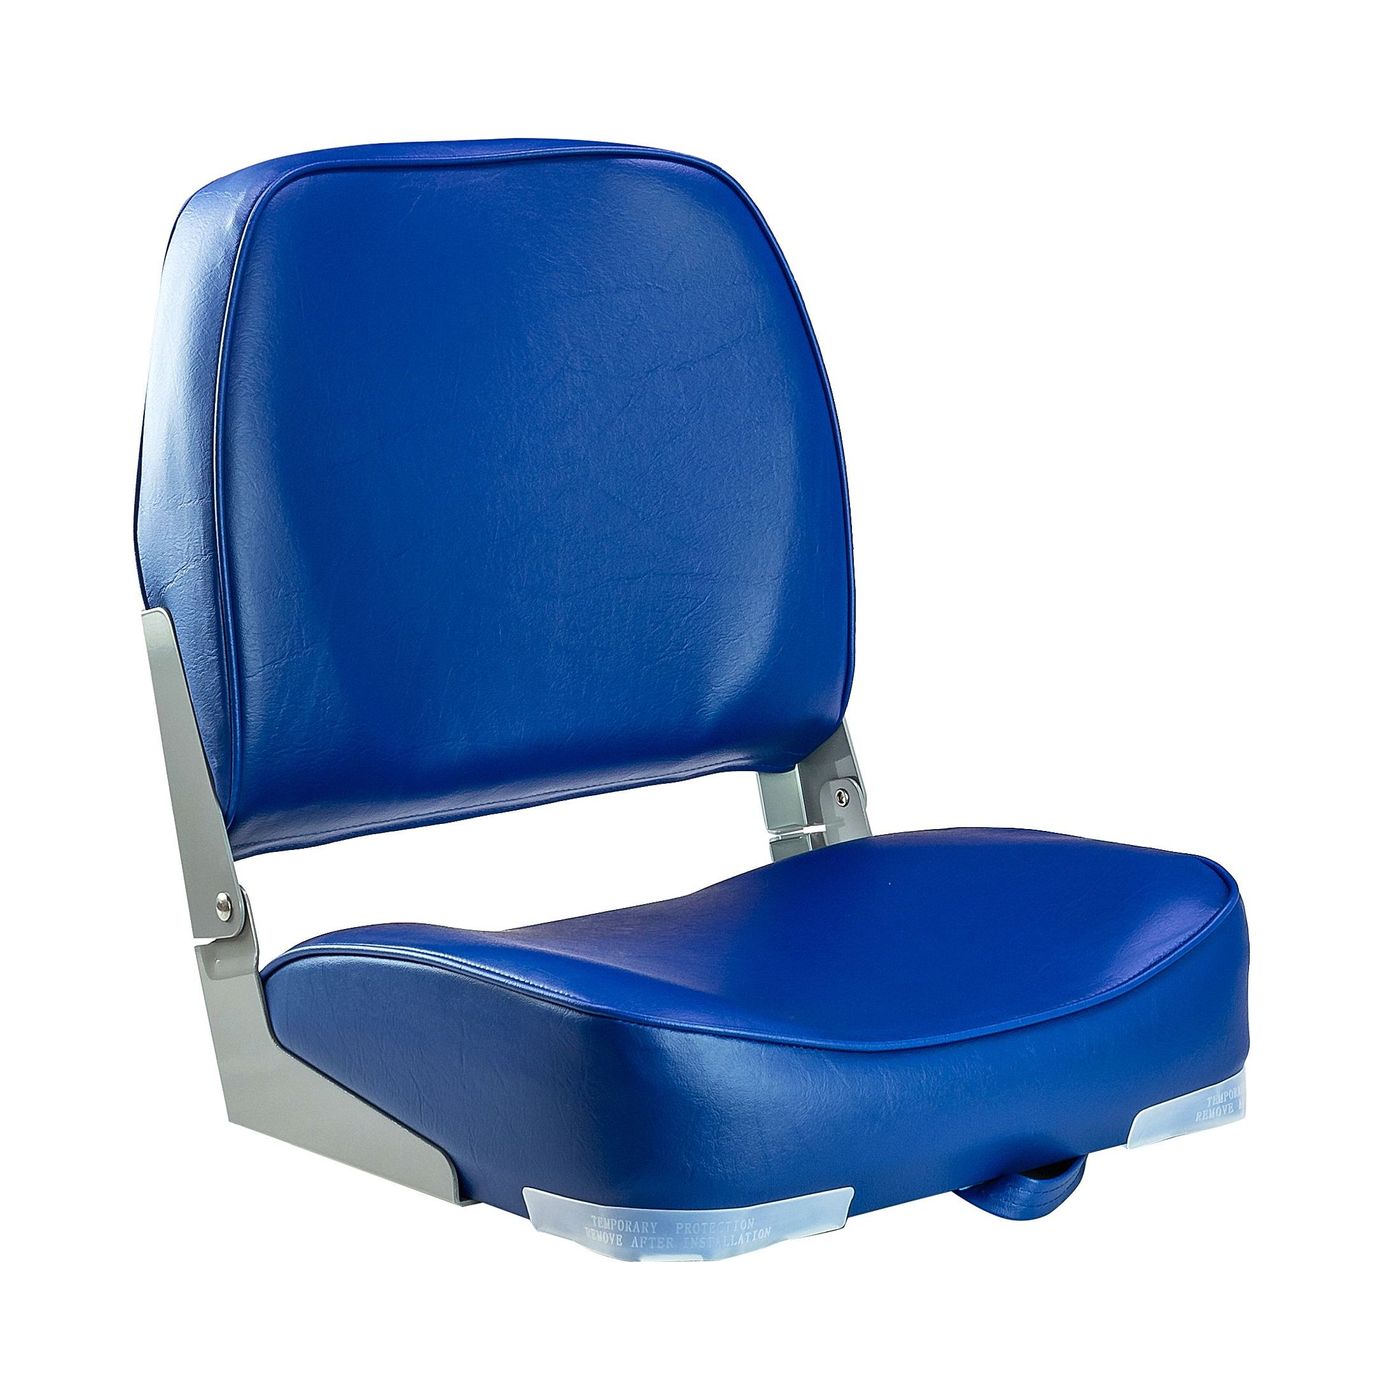 Кресло мягкое складное, обивка винил, цвет синий, Marine Rocket 75103B-MR кресло мягкое складное classic обивка винил серый синий marine rocket 75102gb mr